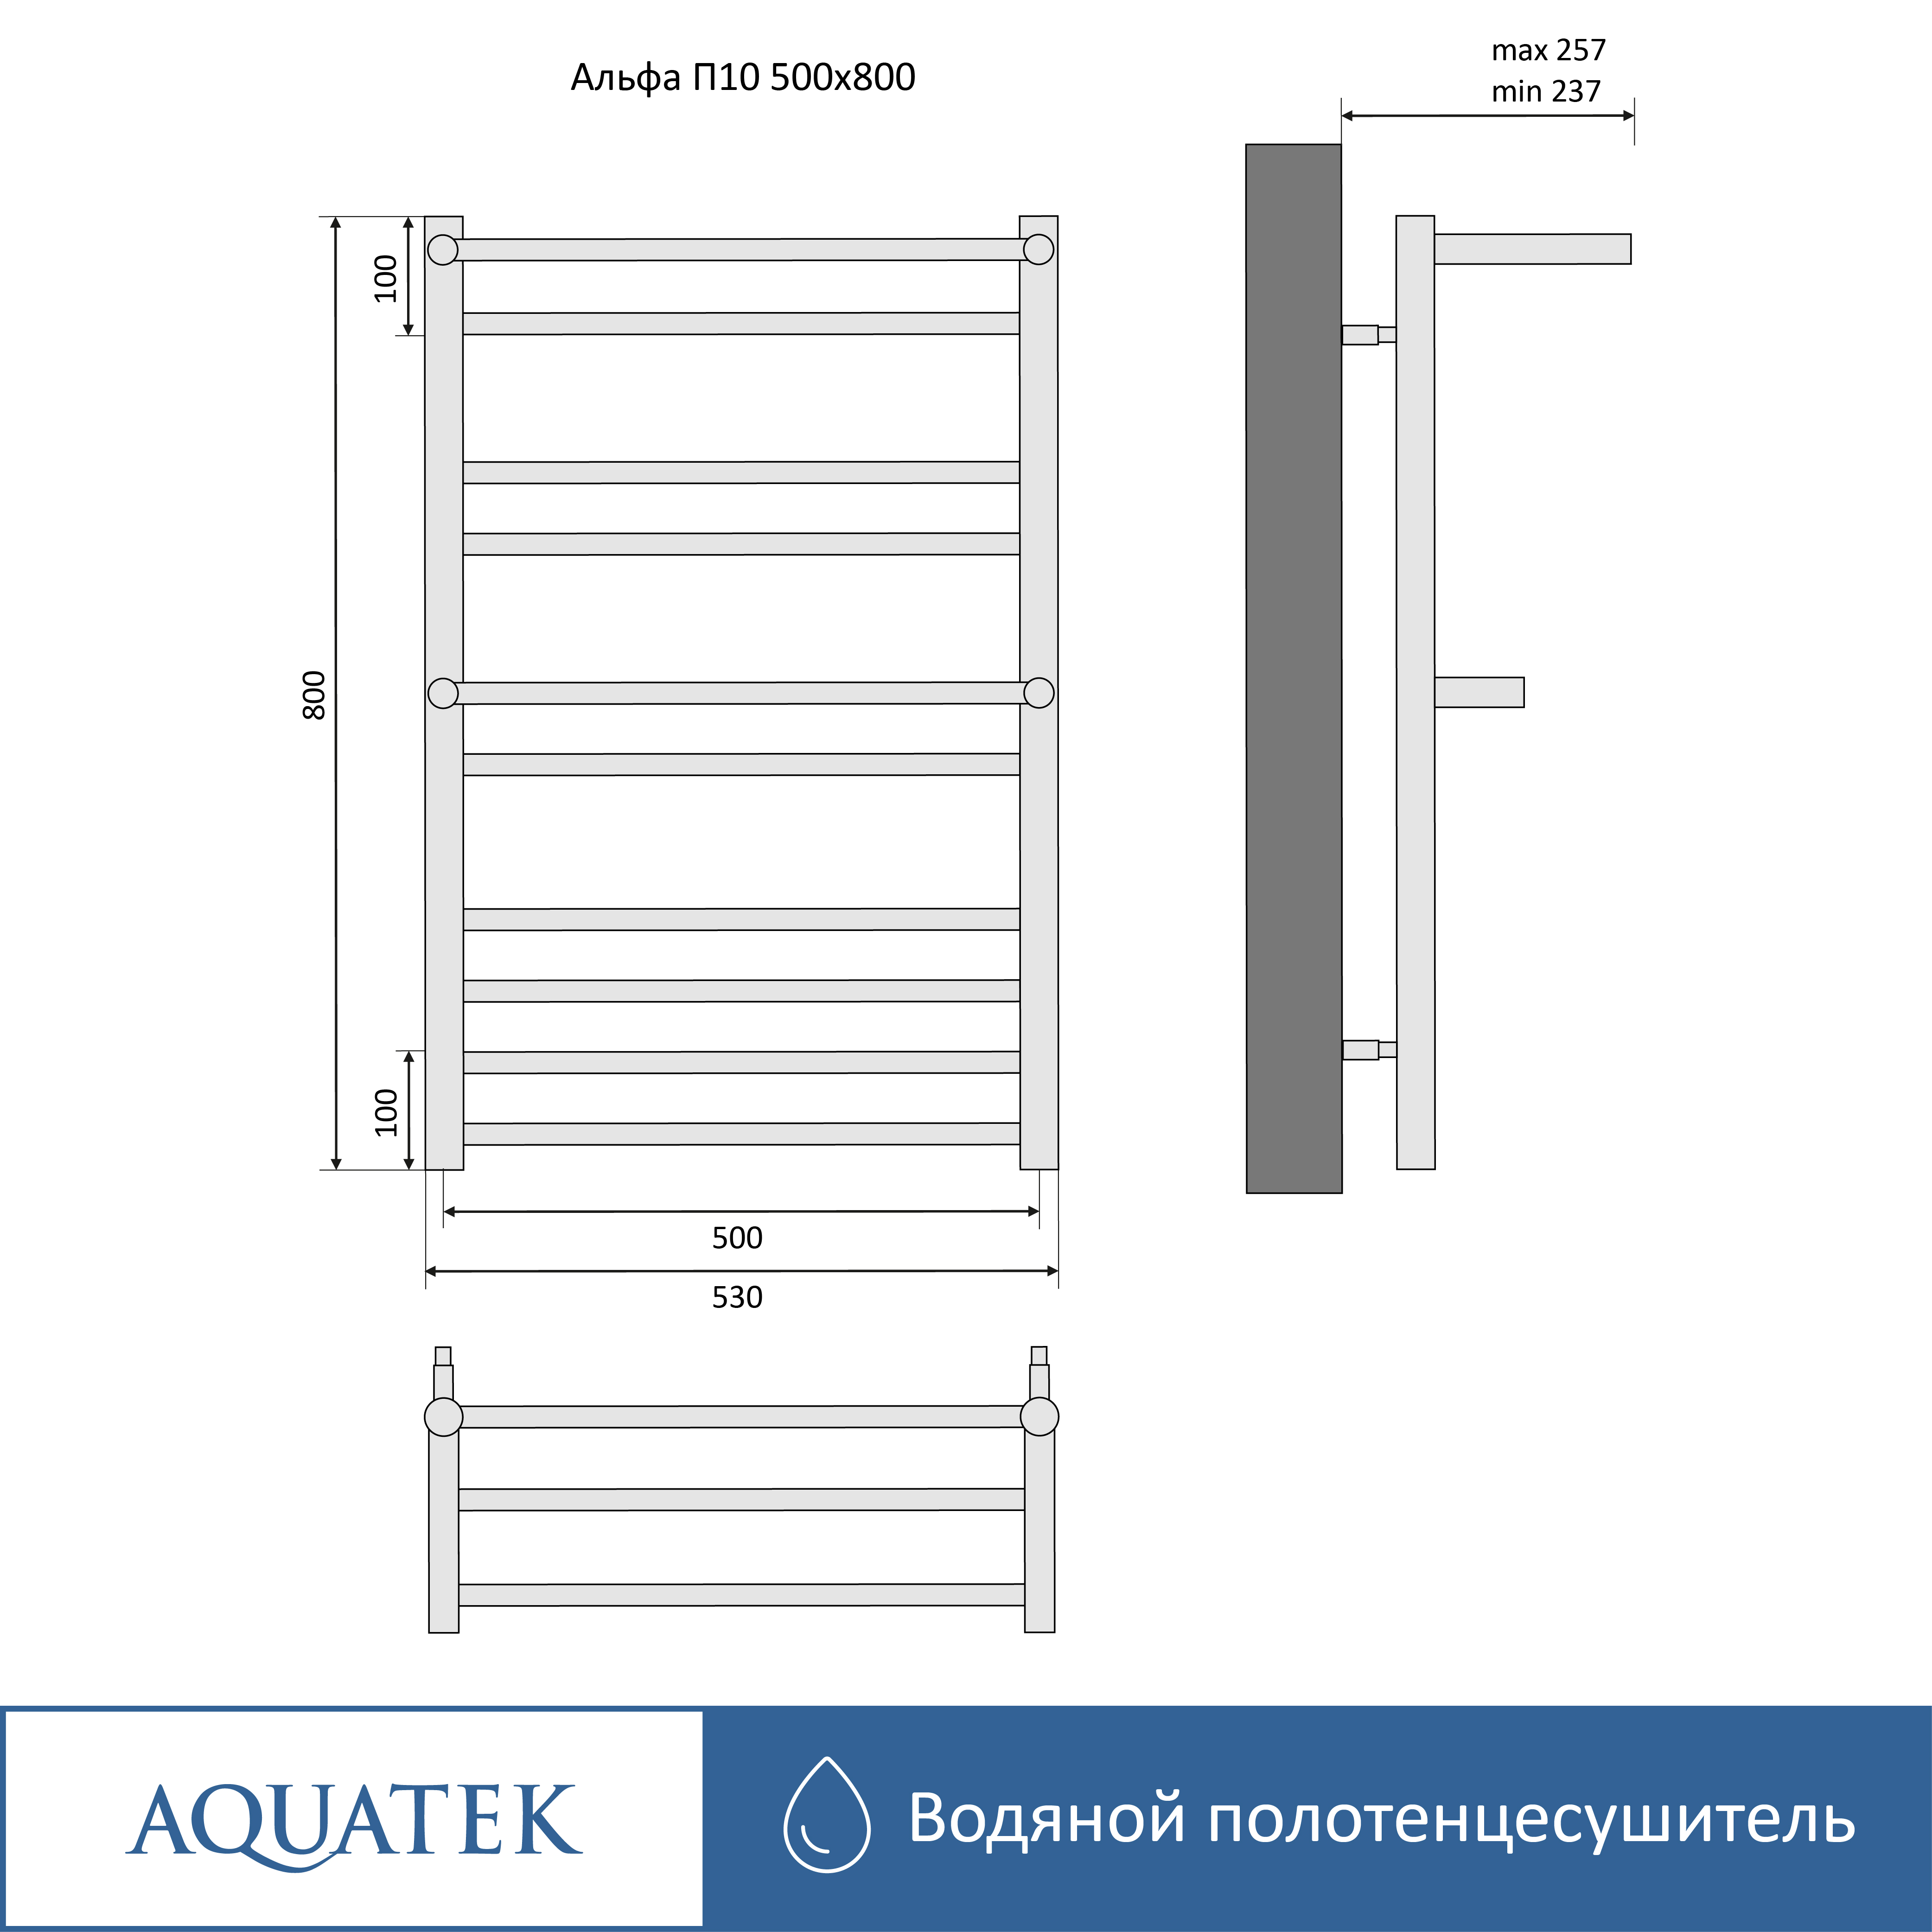 Полотенцесушитель водяной Aquatek Альфа П10 500х800, черный муар AQ RRP1080BL - 15